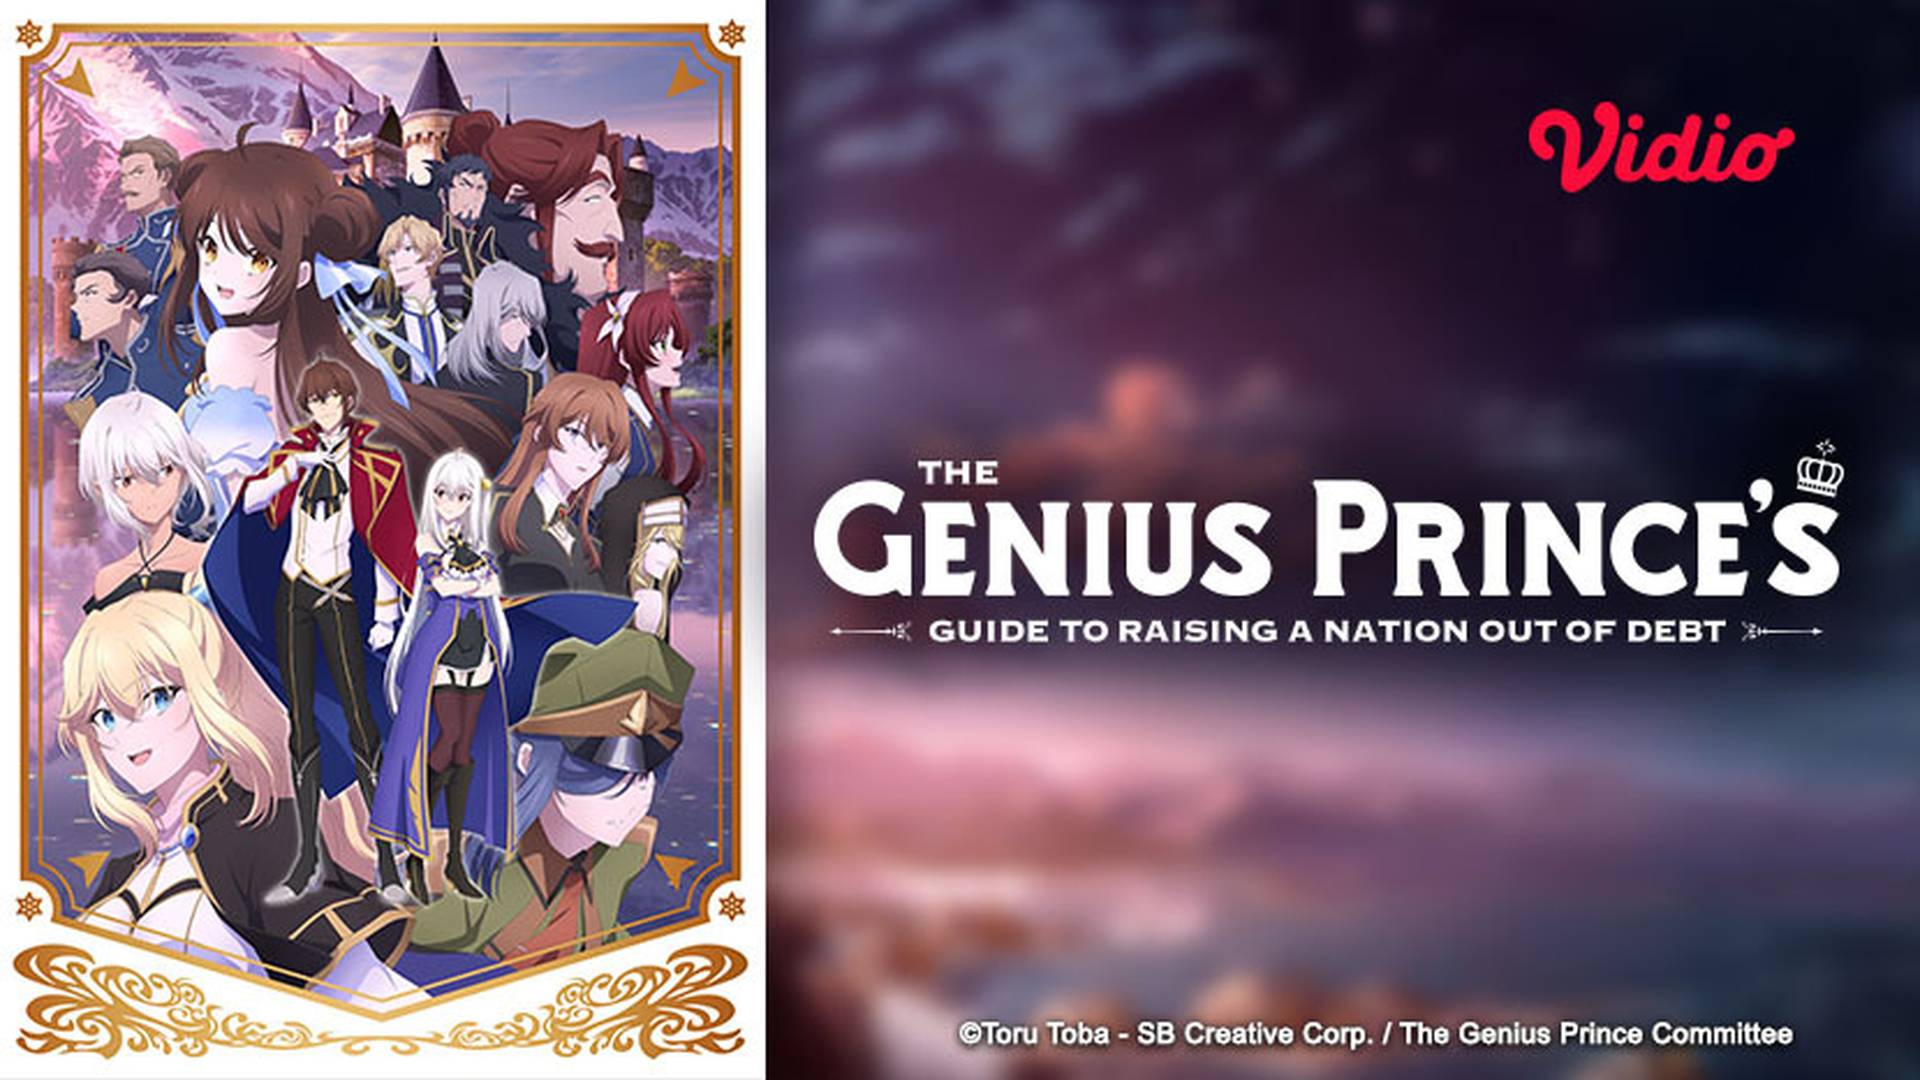 The Genius Prince's Guide to Raising a Nation Out of Debt ganha novo vídeo  promocional com prévia da música de abertura - Crunchyroll Notícias